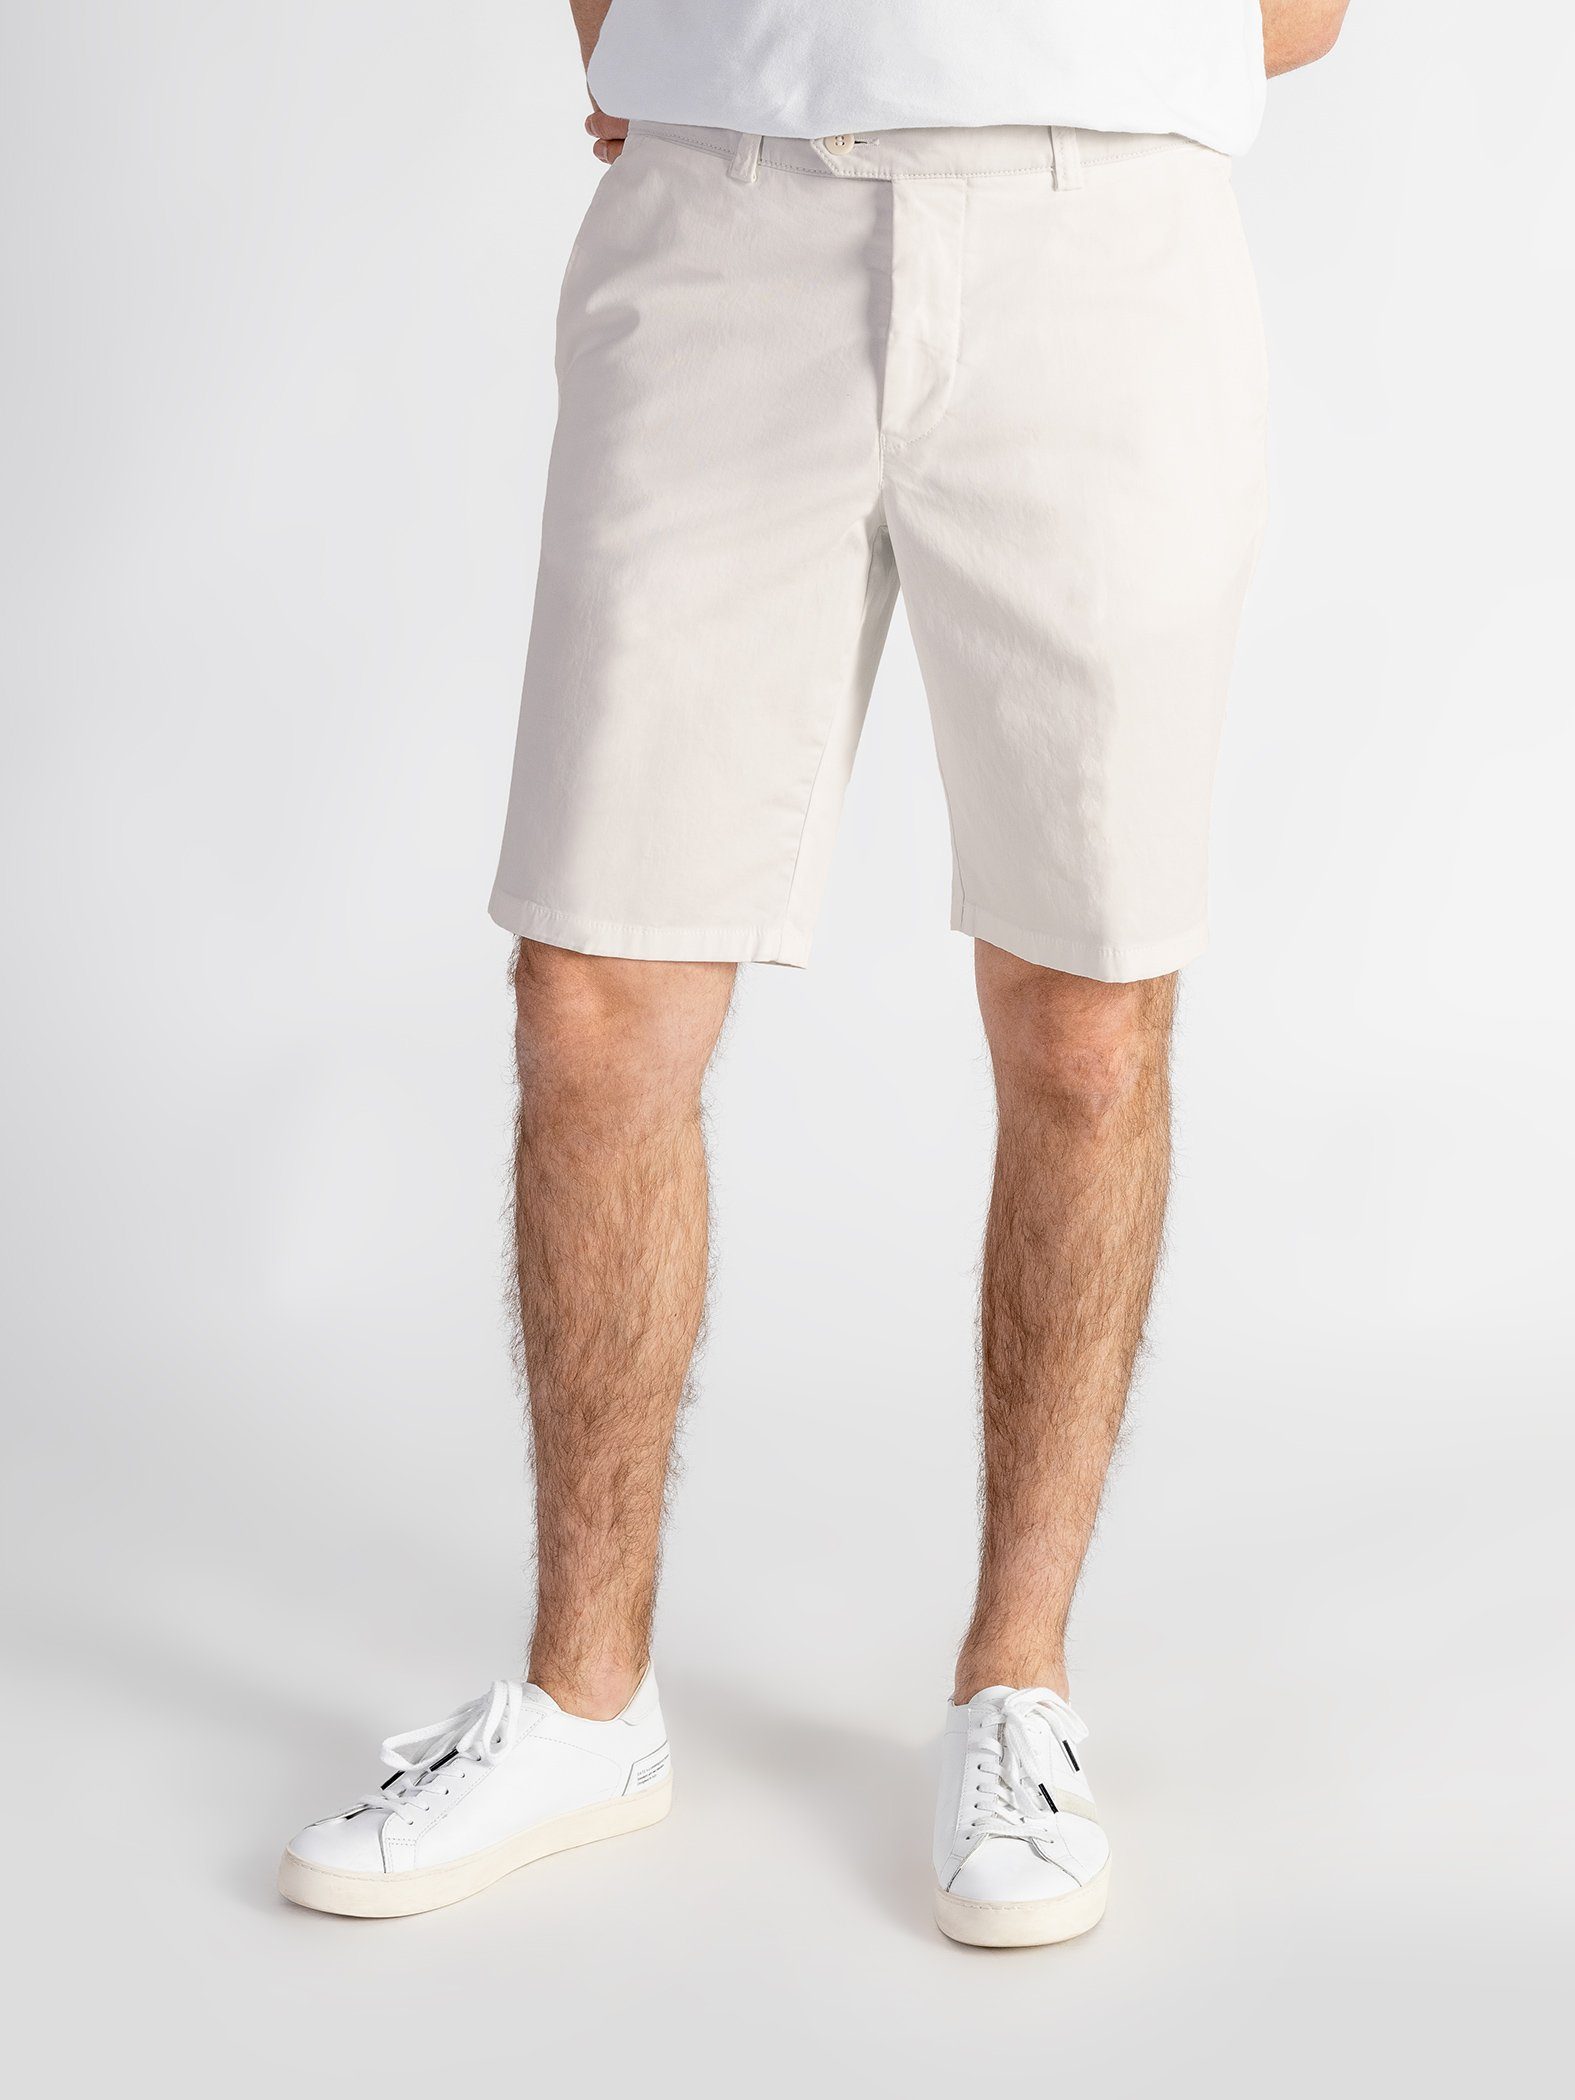 TwoMates Shorts Shorts mit elastischem Farbauswahl, GOTS-zertifiziert Bund, hellbeige